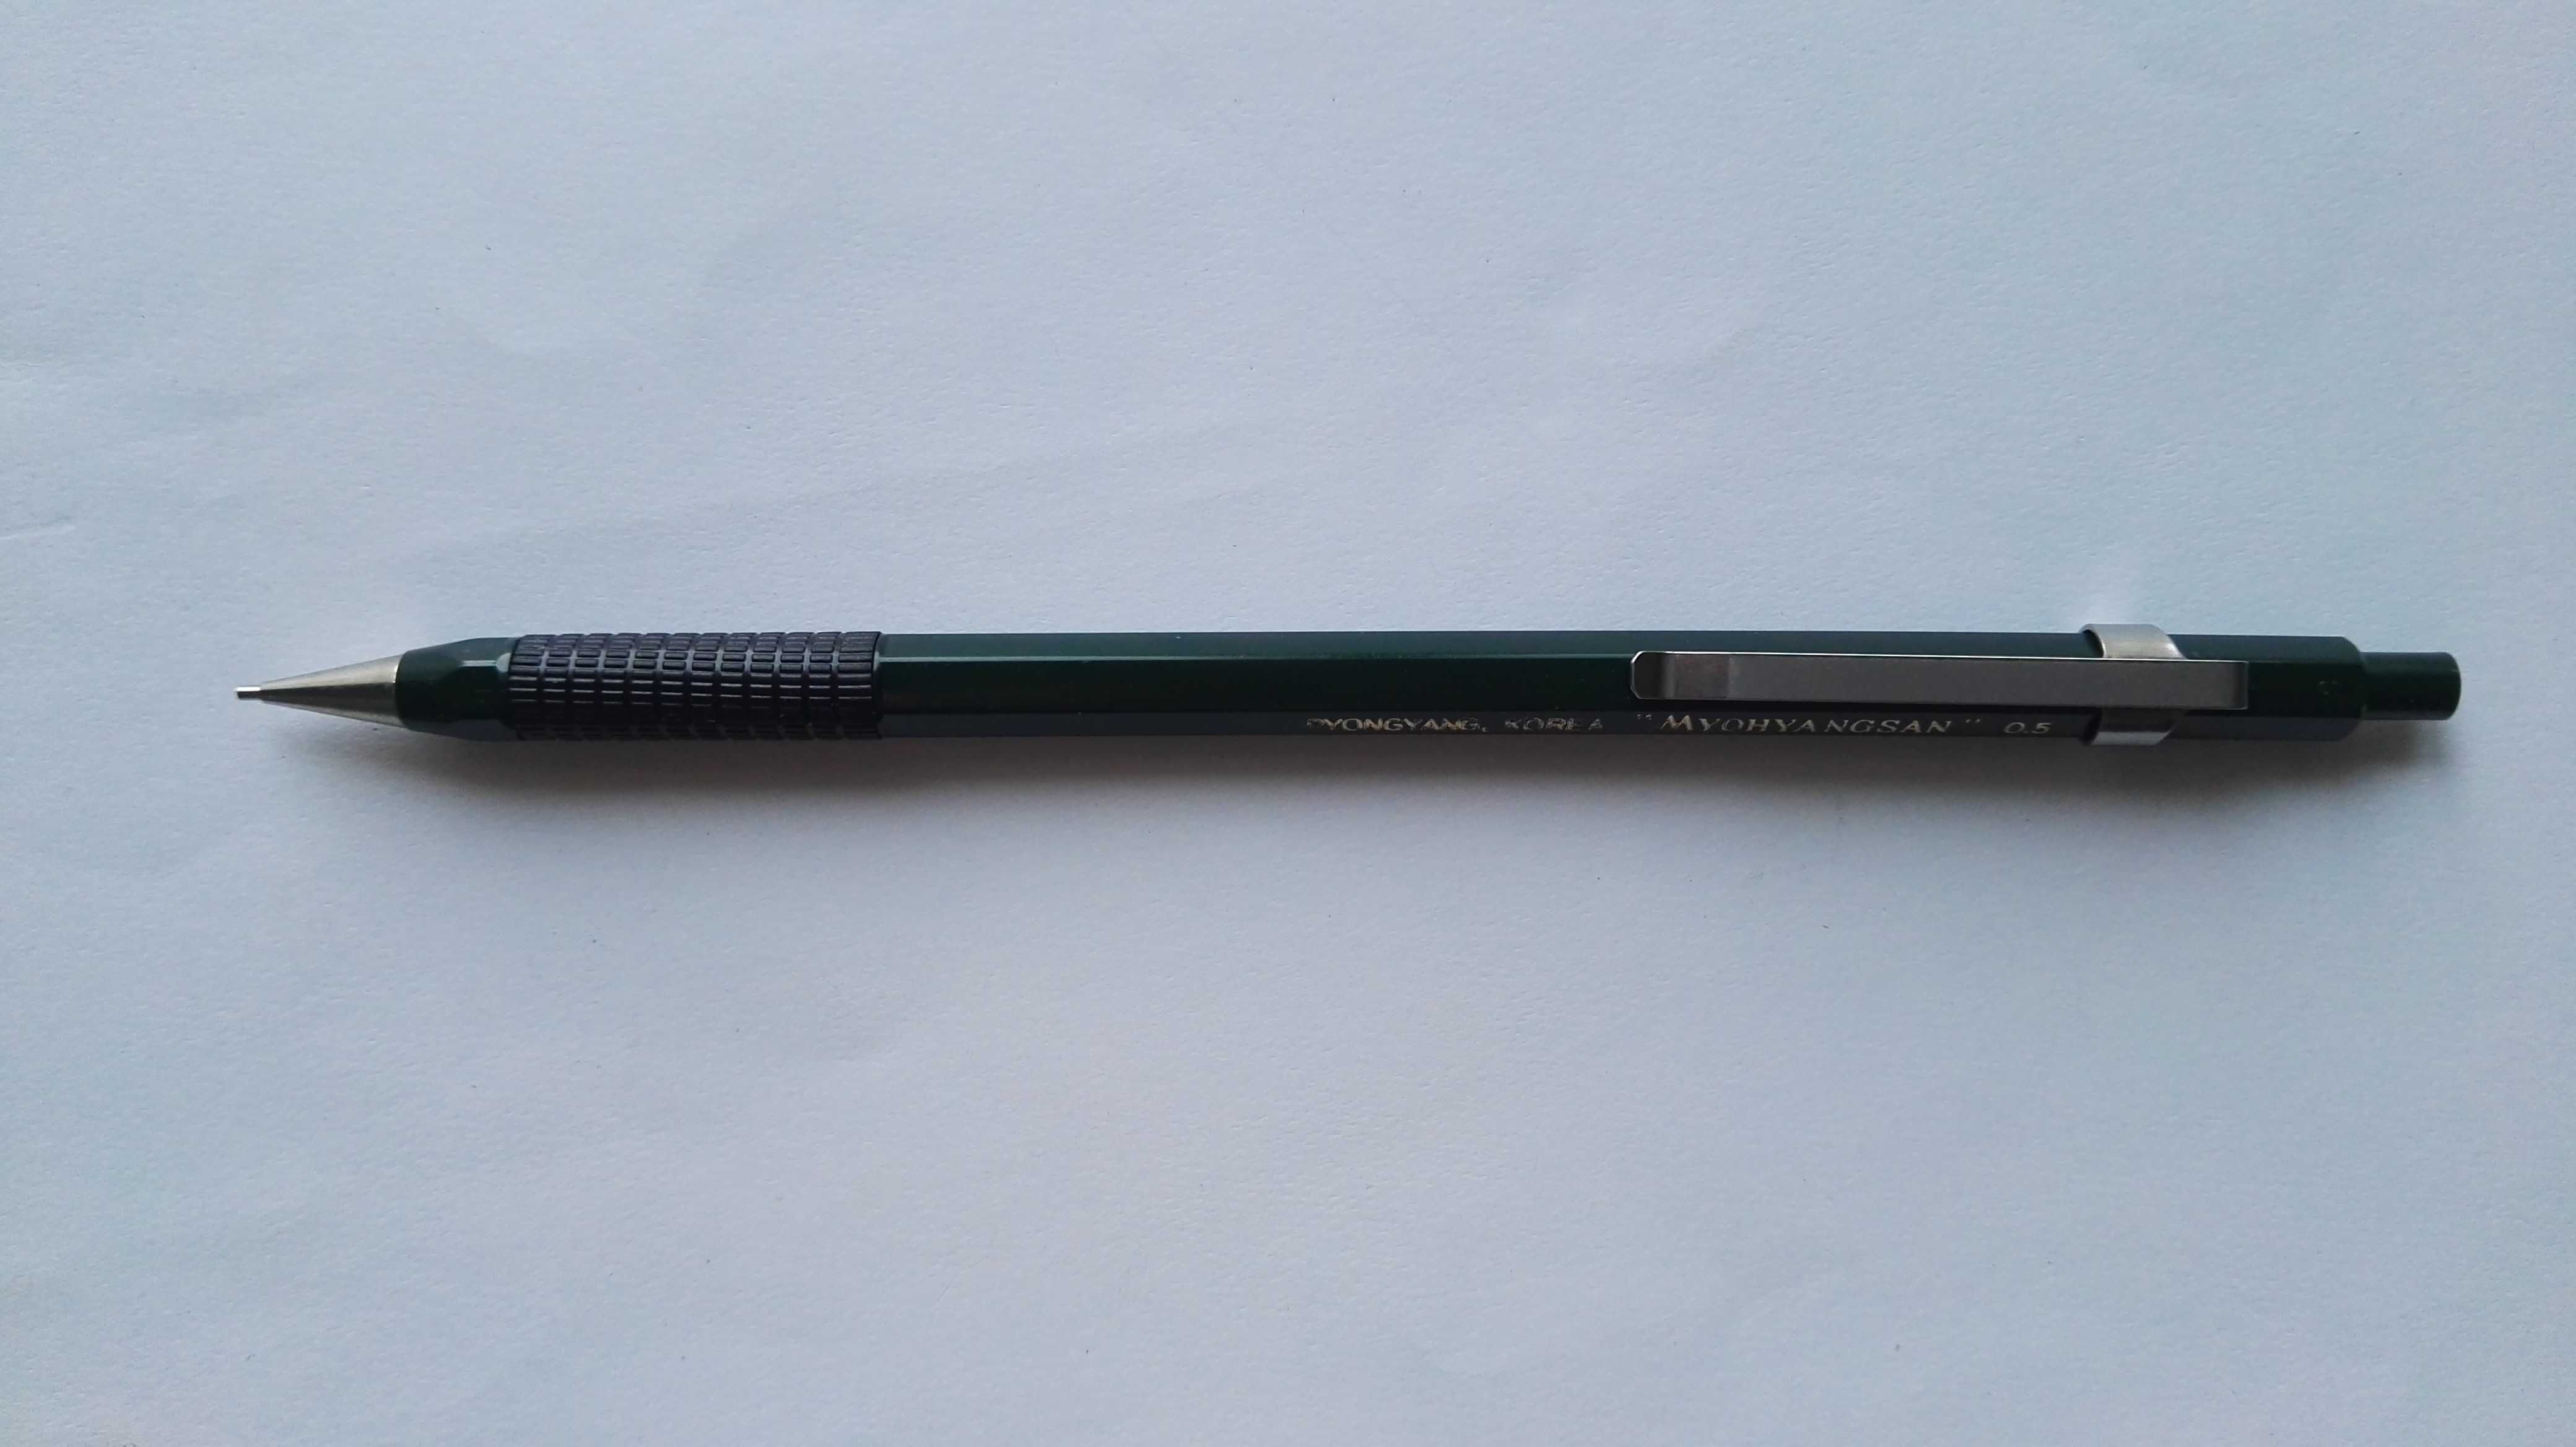 Механический карандаш Pyongyang «MYOHYANGSAN» 0.5 (Korea, времен СССР)